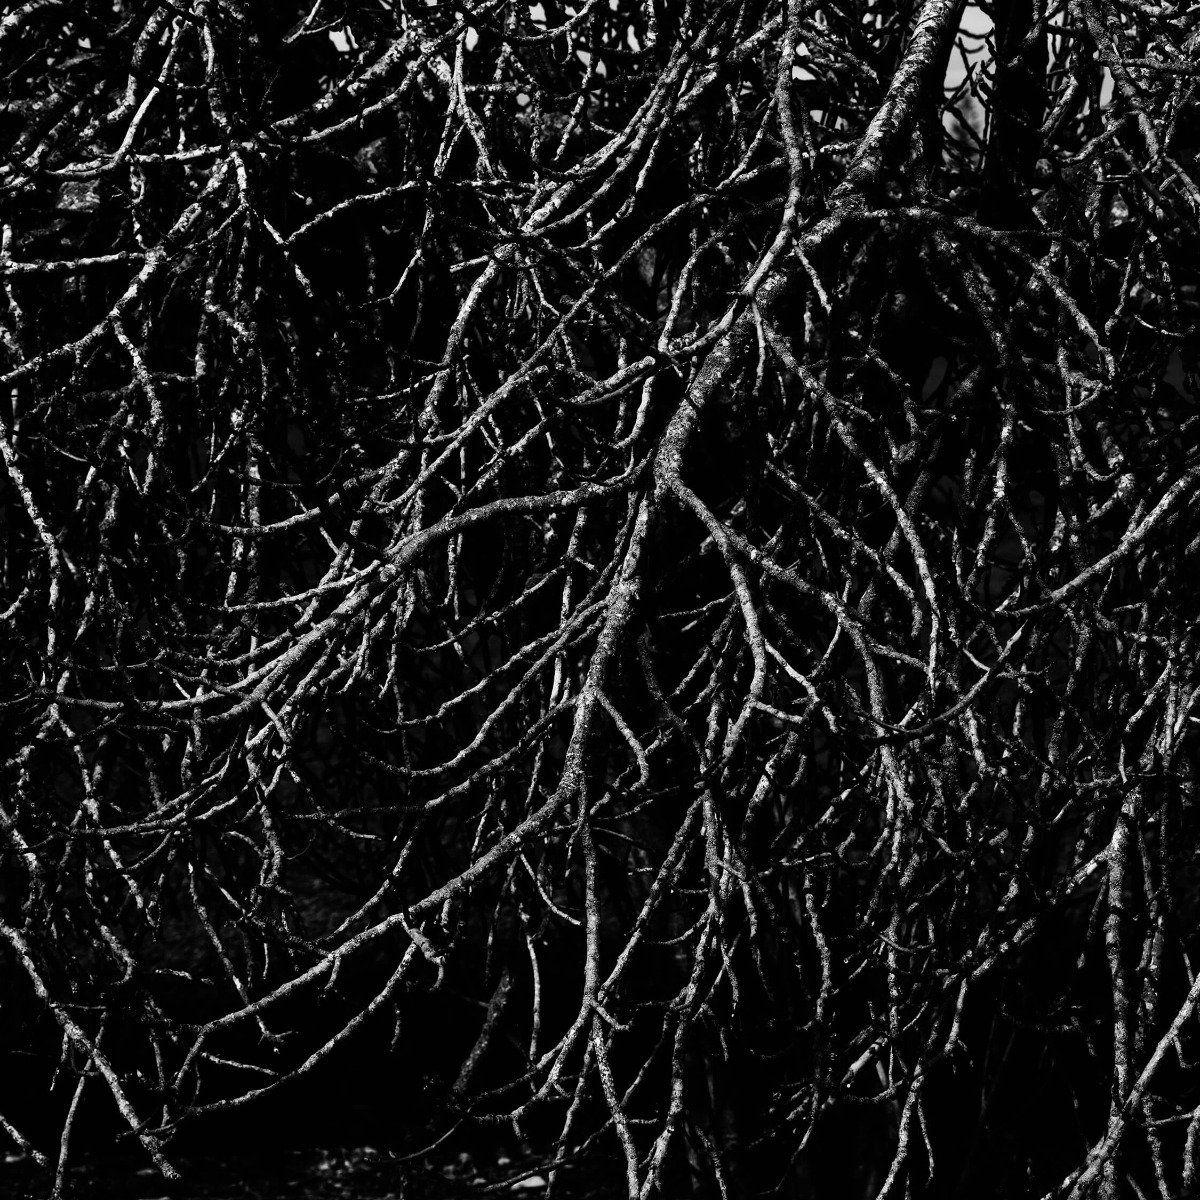 Baumzweige in schwarz-weiß